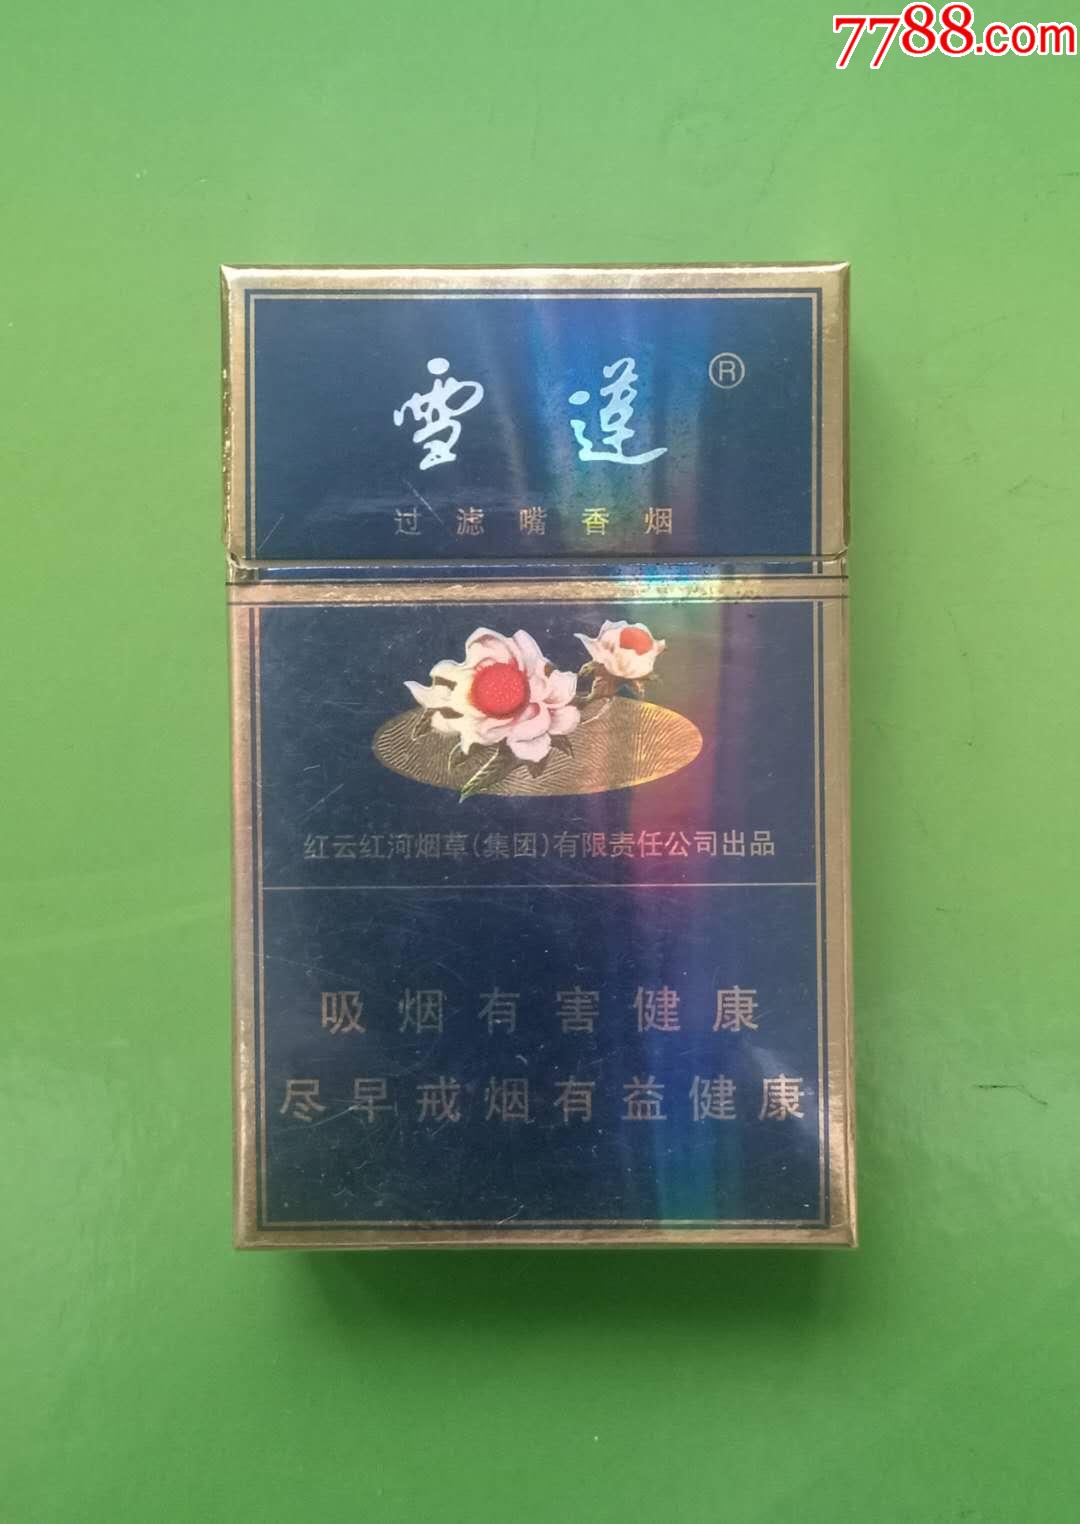 新疆雪莲香烟价格表图片